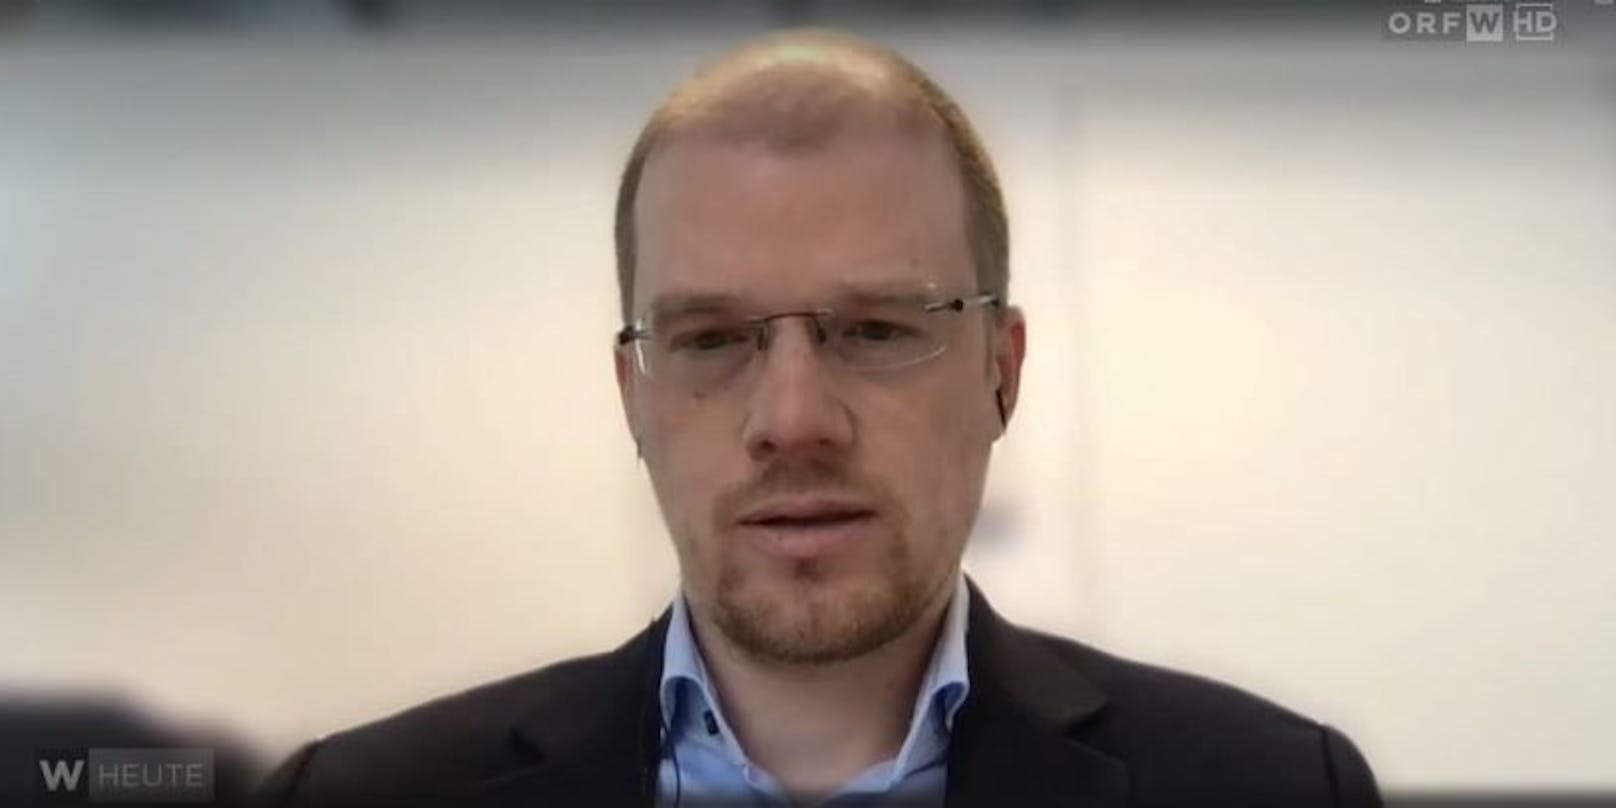 Regierungs-Experte und Virologe Andreas Bergthaler im ORF-Interview bei "Wien Heute"